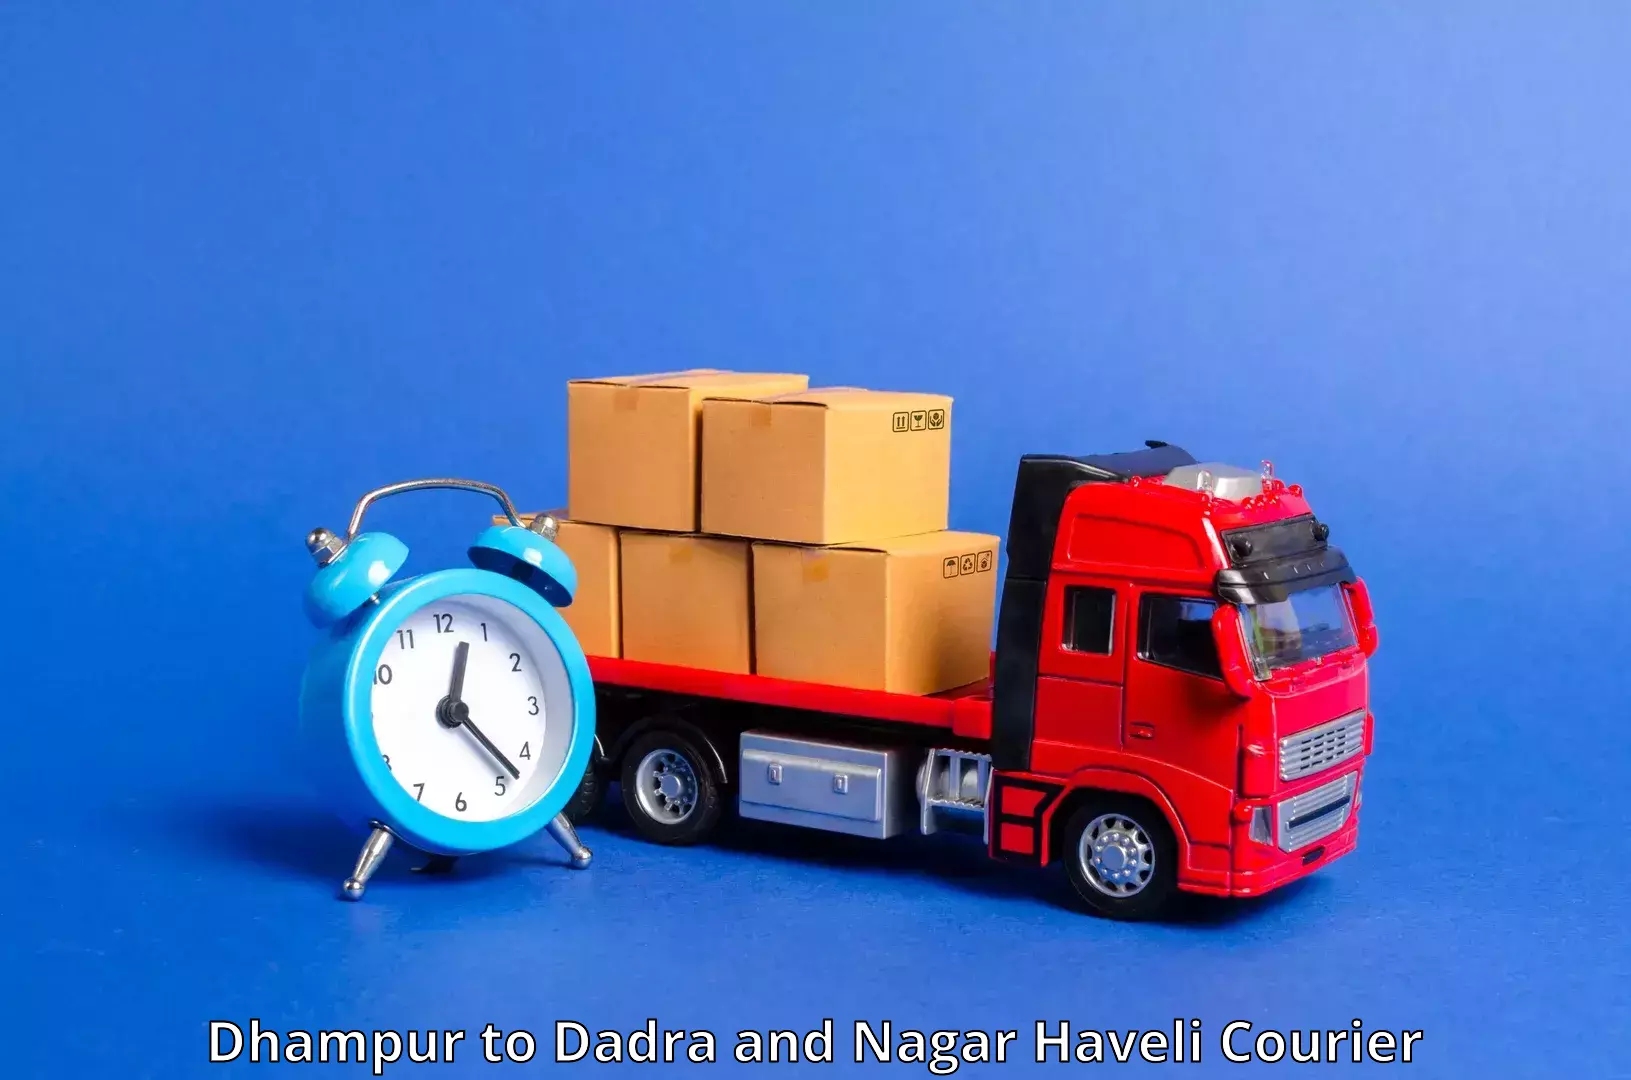 Efficient freight service Dhampur to Silvassa